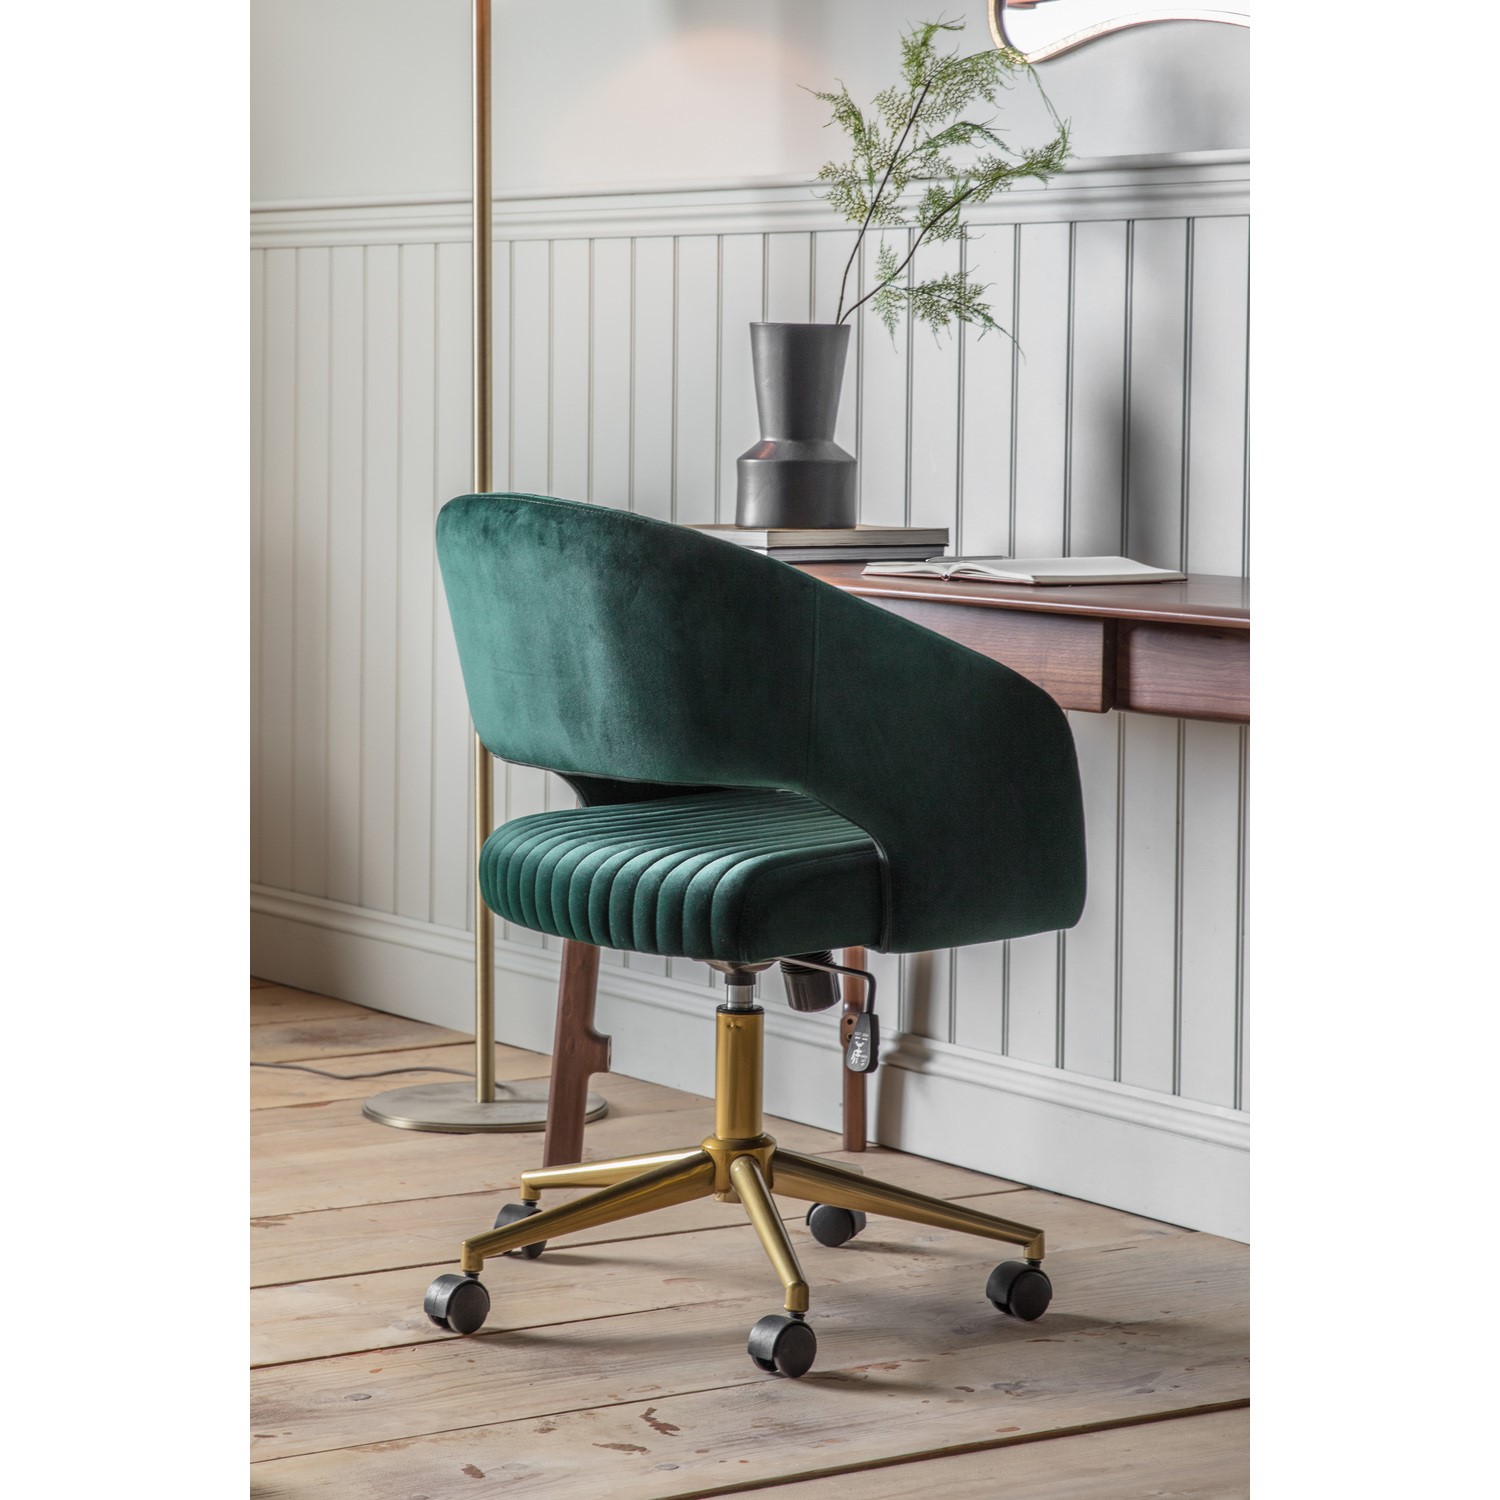 Green Velvet Desk Chair - Green Velvet Office Chair With Swivel Base